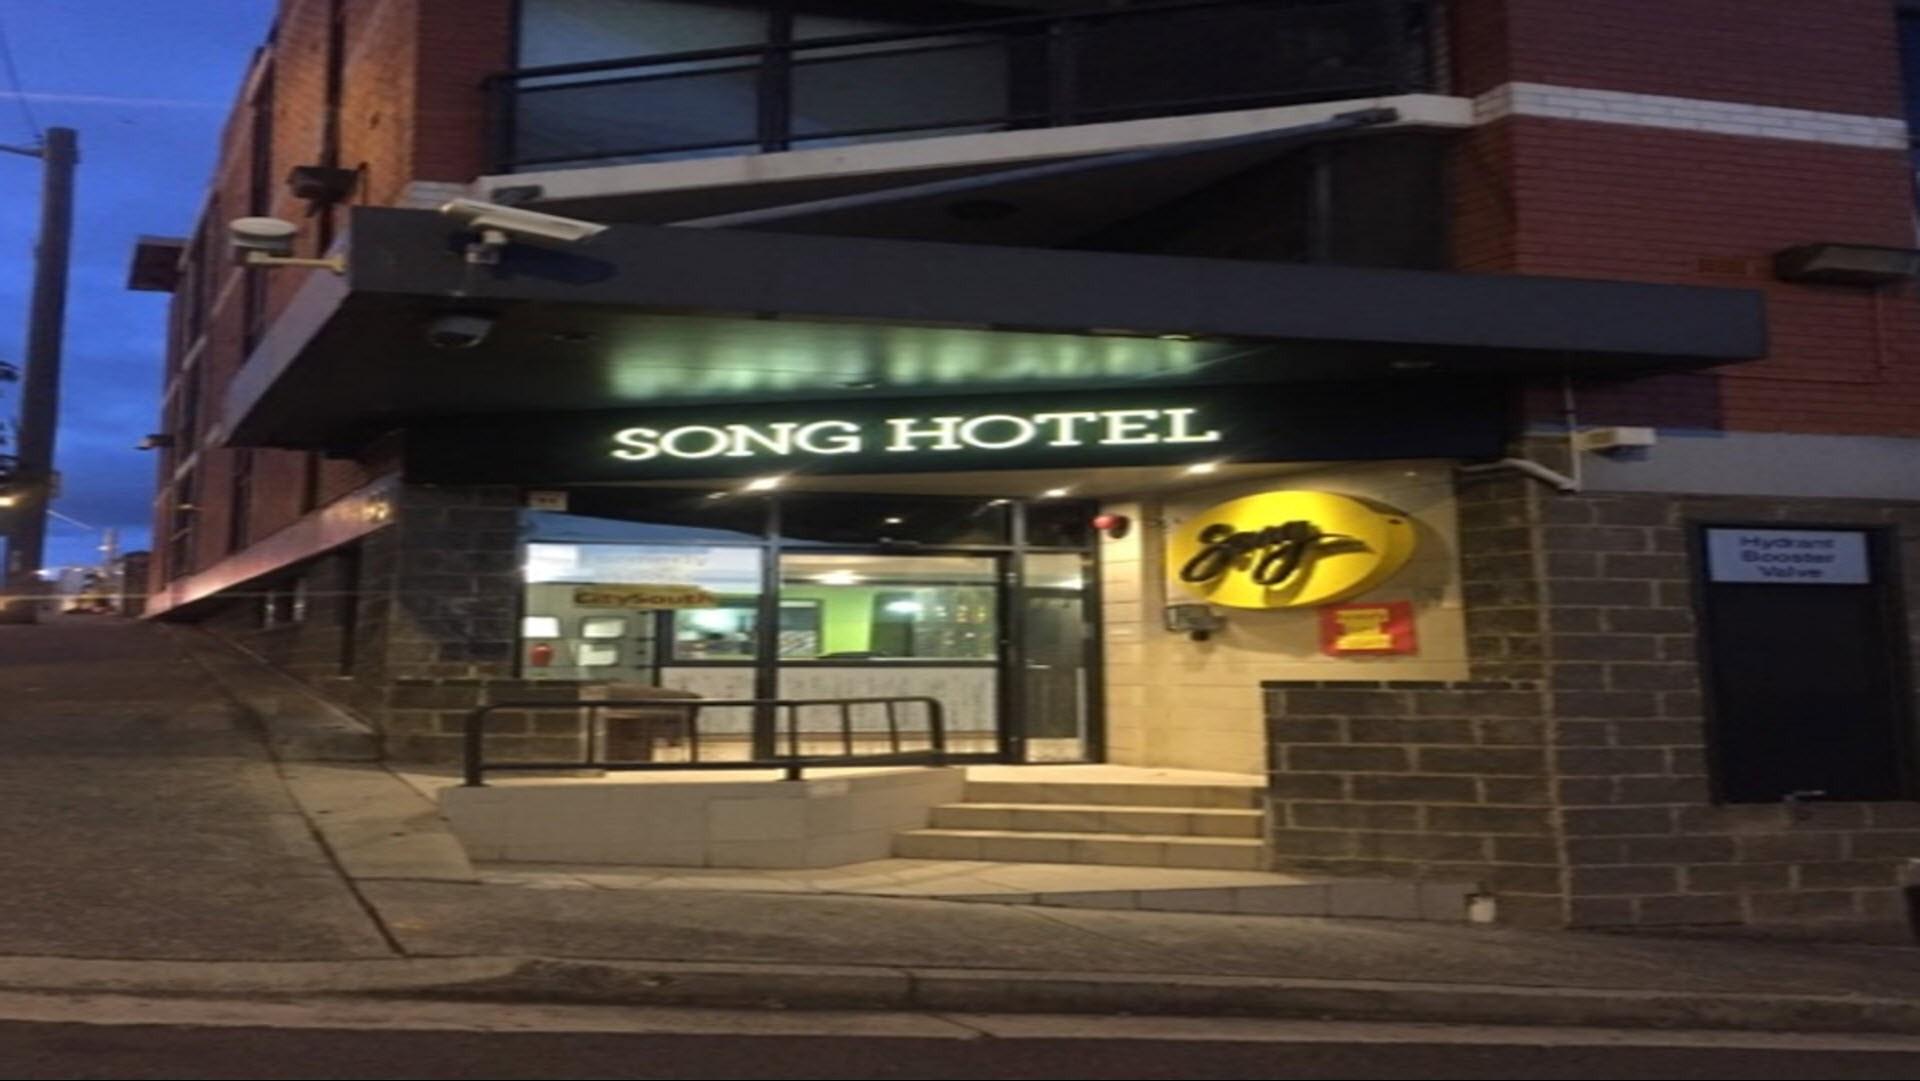 Song Hotel Redfern in Sydney, AU